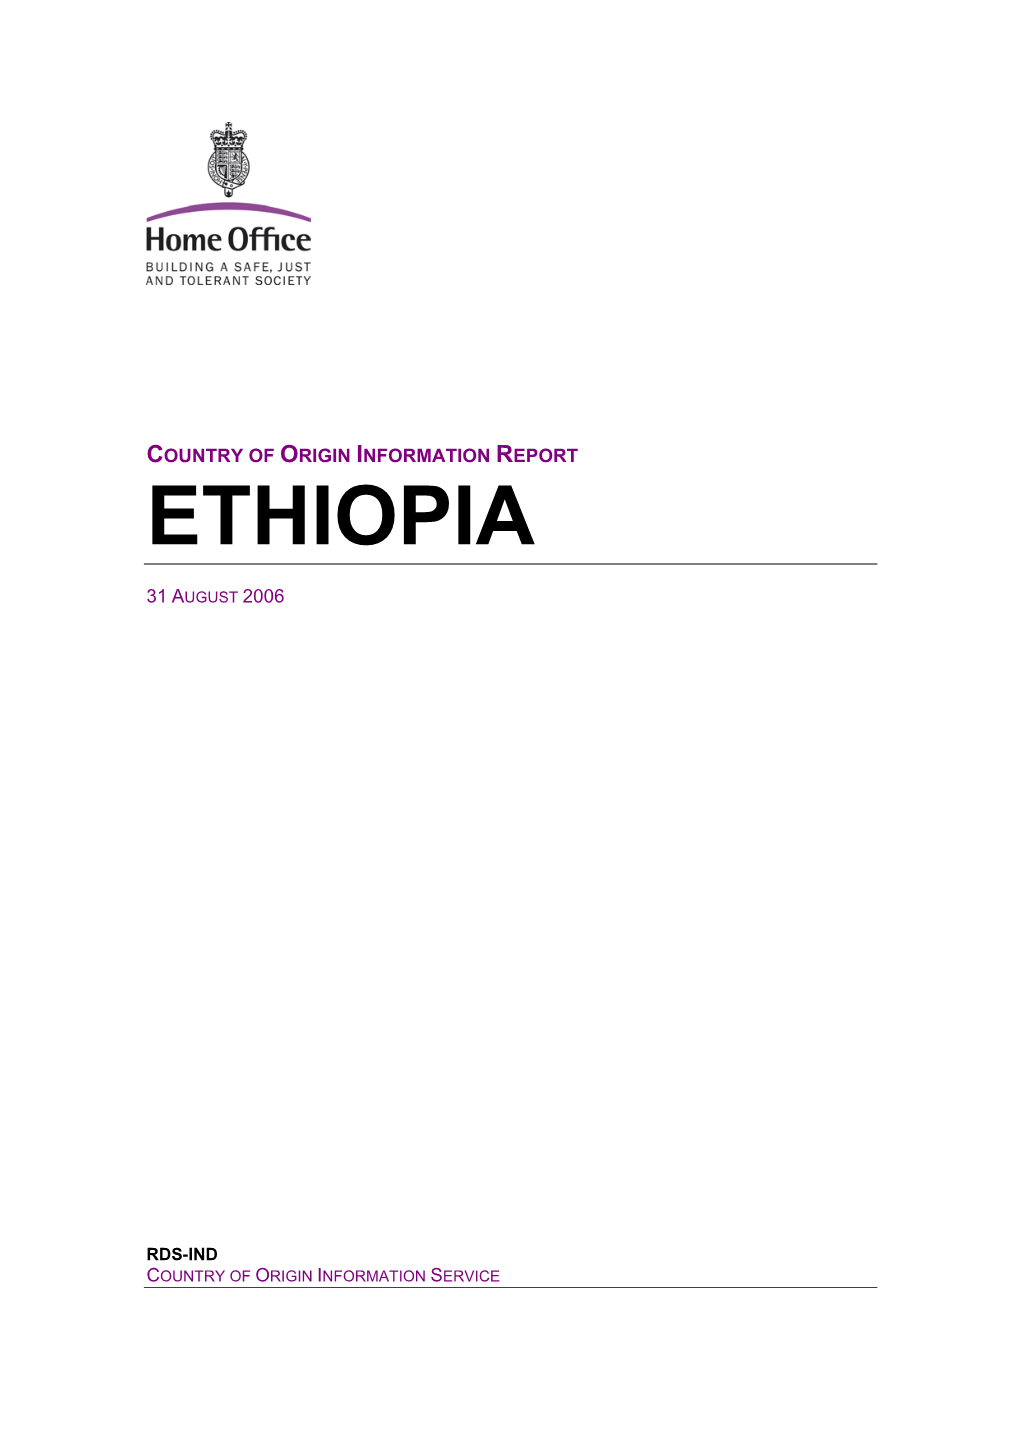 Ethiopia COIS Report August 2006